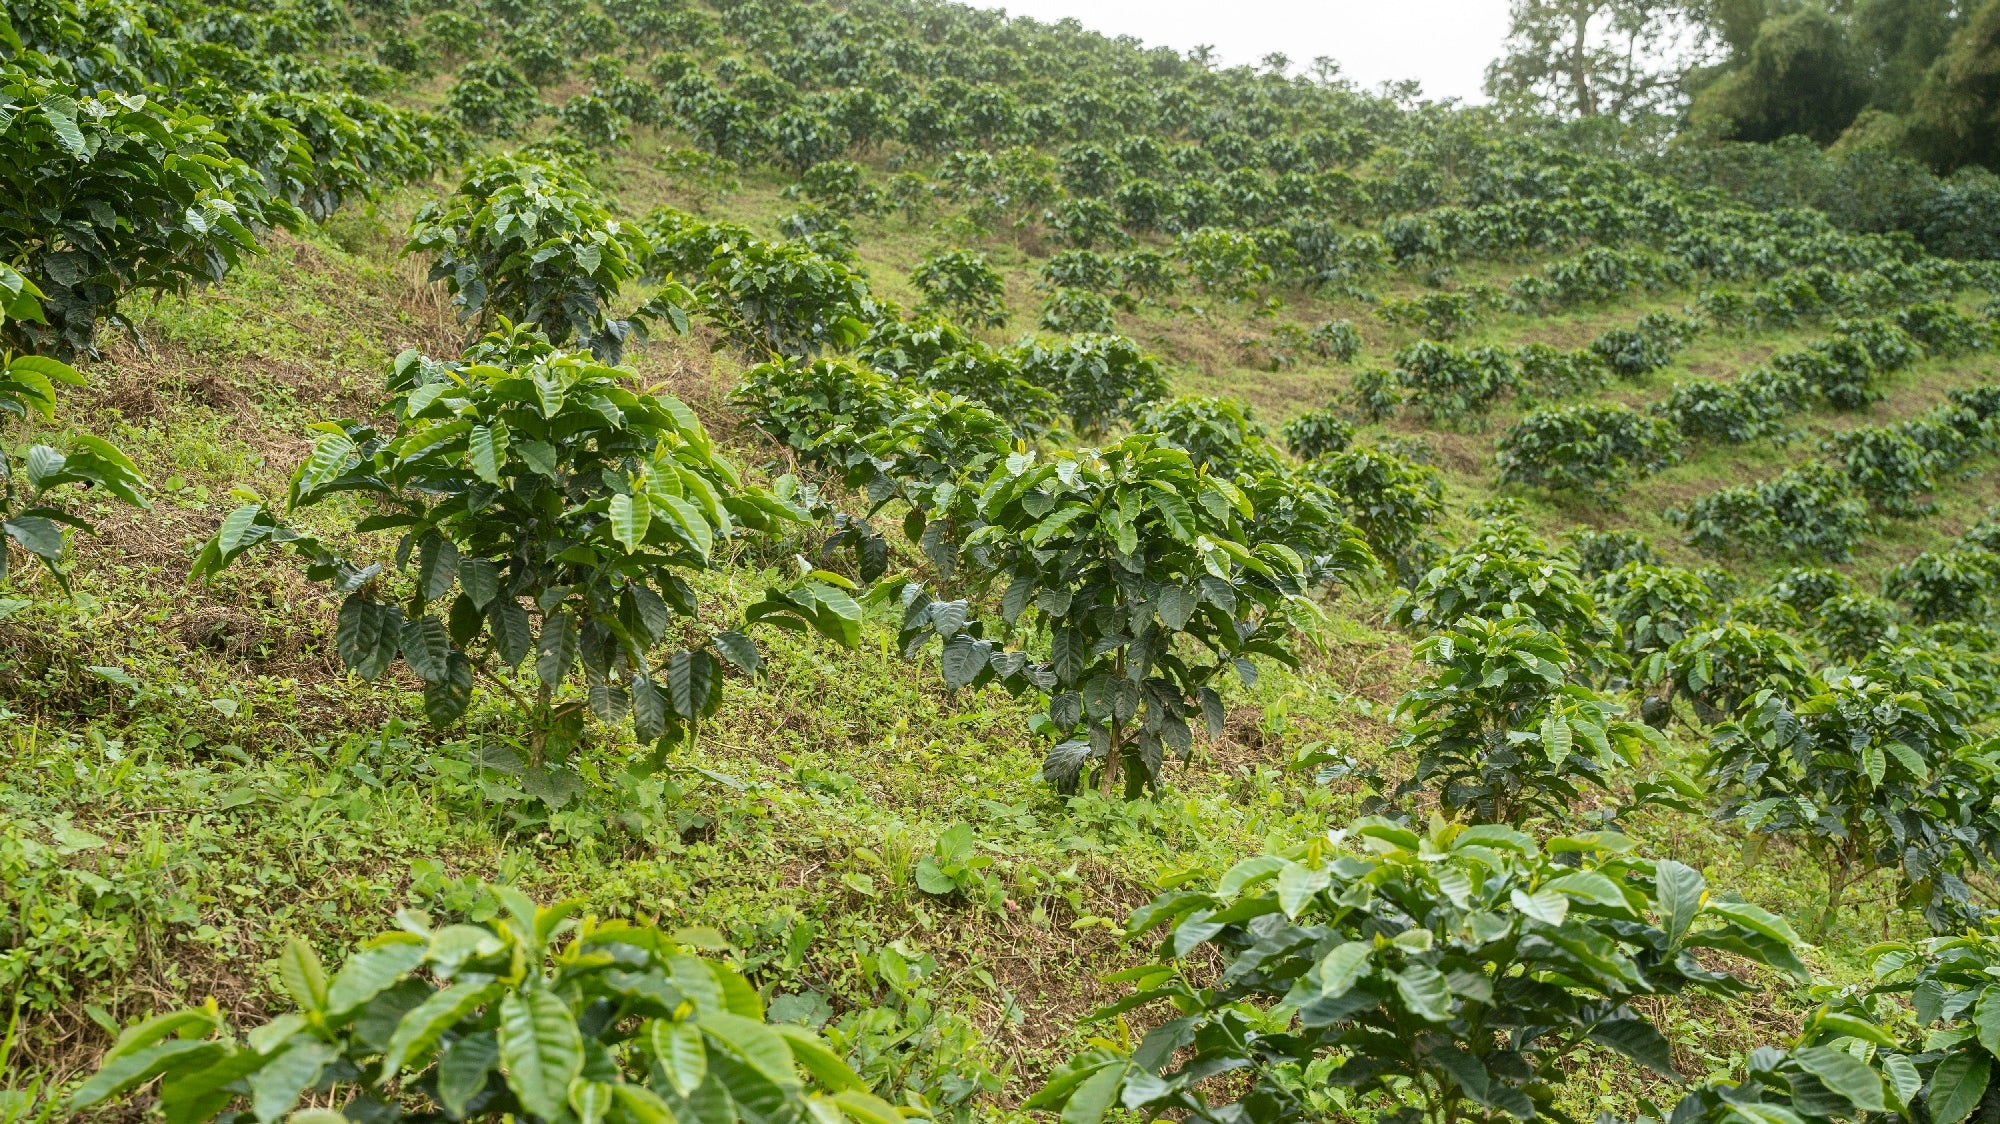 Fields of Coffee Plants